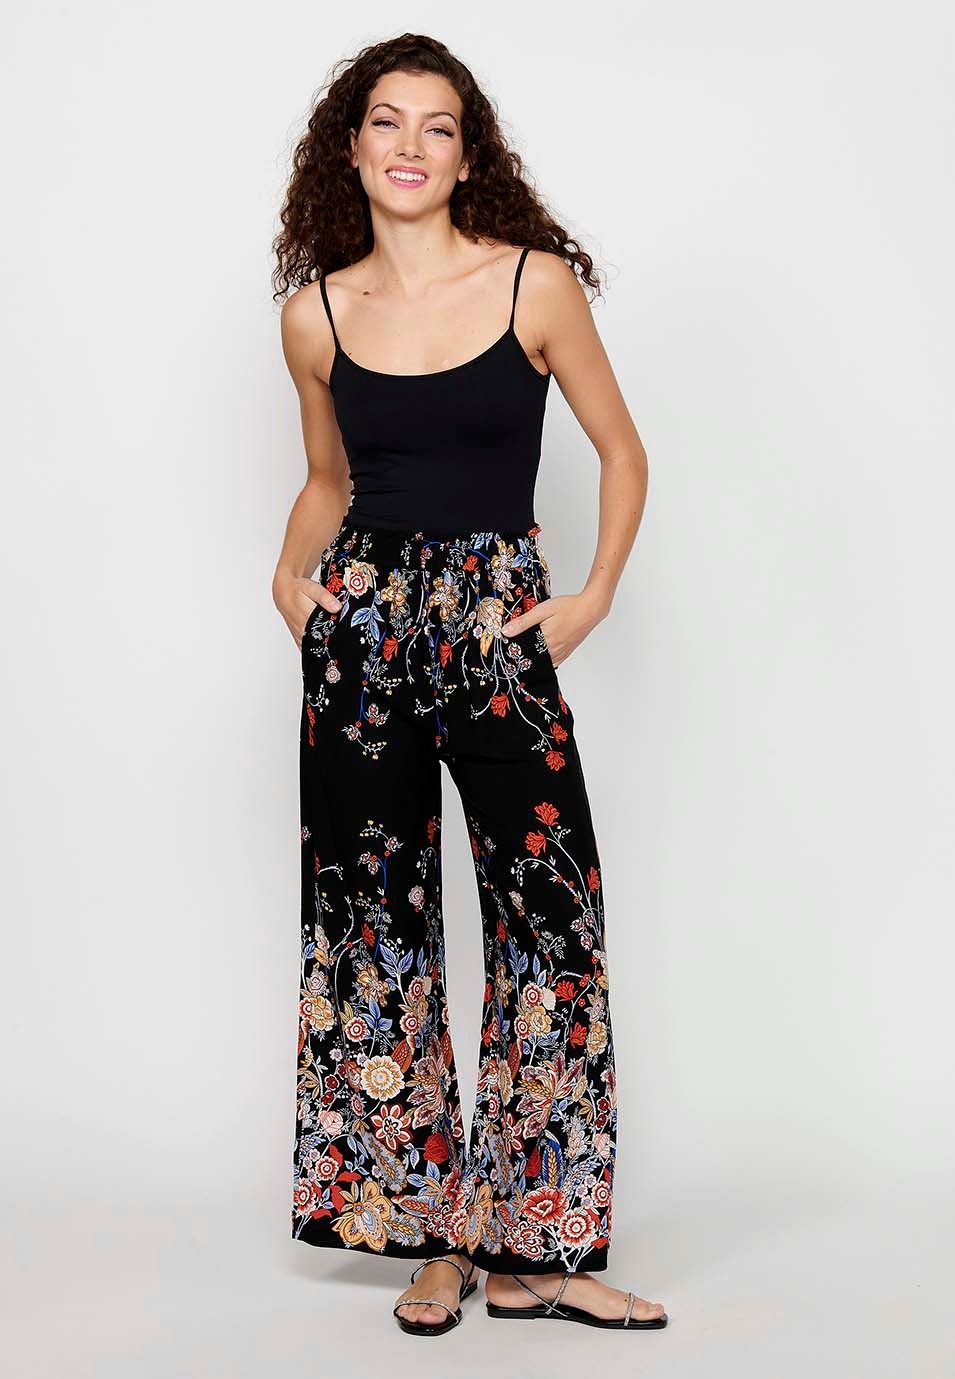 Pantalón largo holgado con Estampado floral y Cintura engomada de Color Negro para Mujer